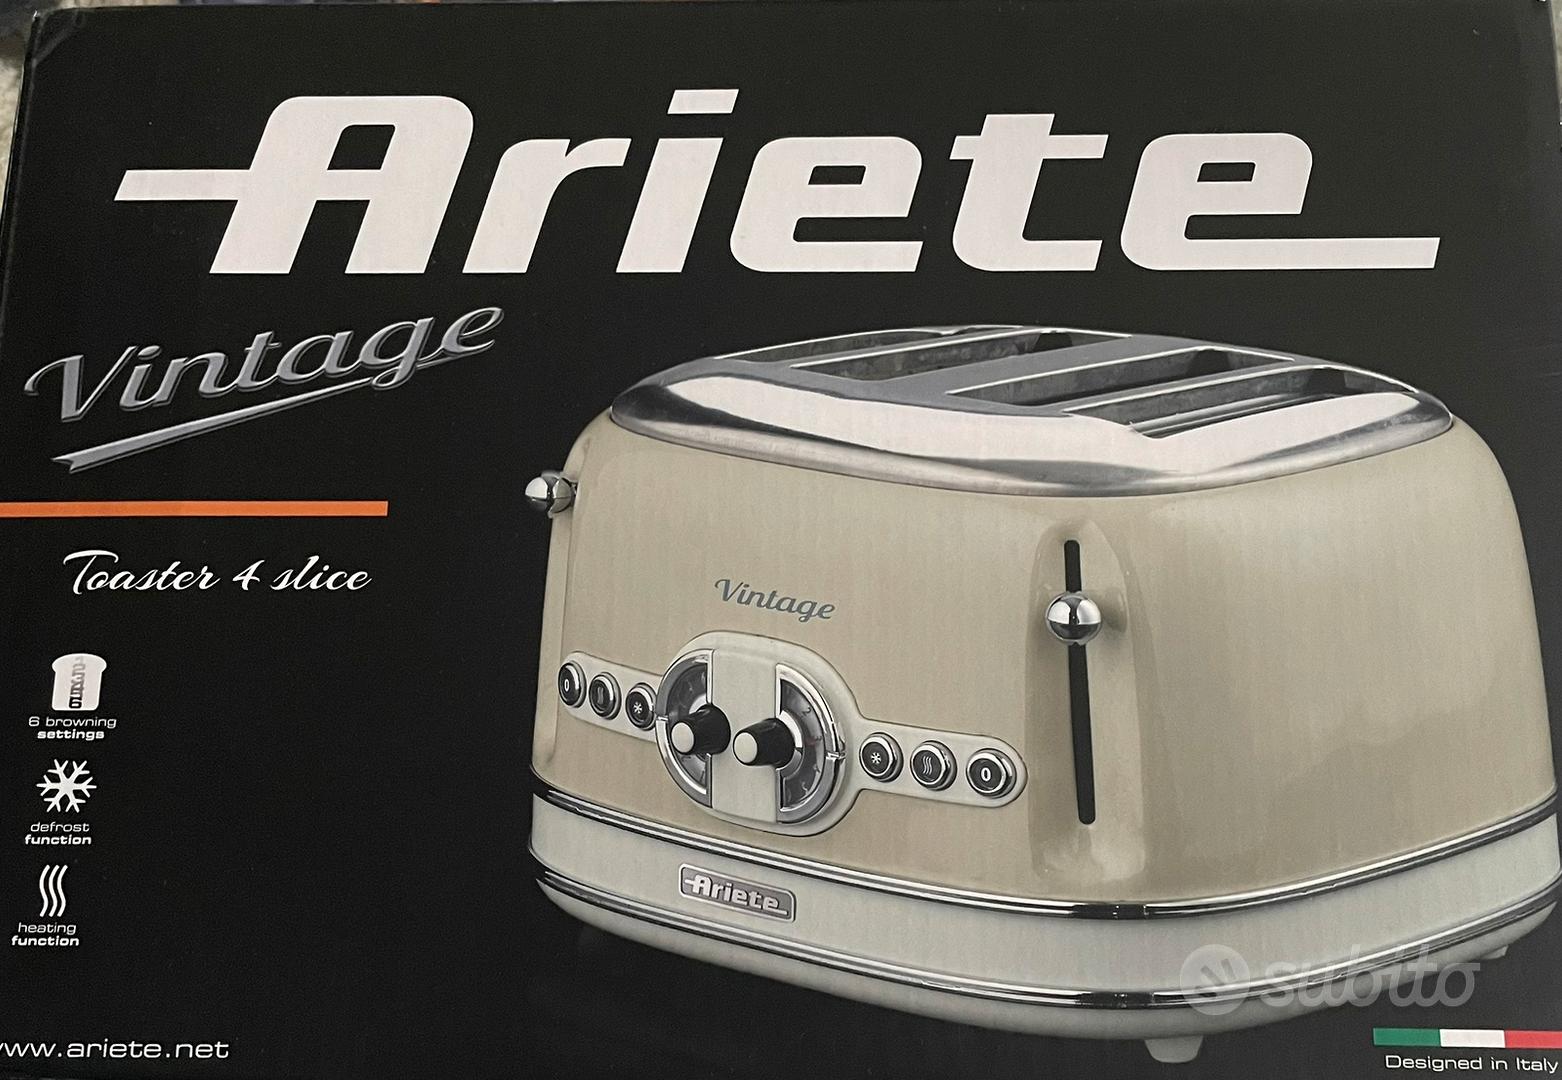 Tostapane Ariete Vintage 4 fette muovo - Elettrodomestici In vendita a Roma